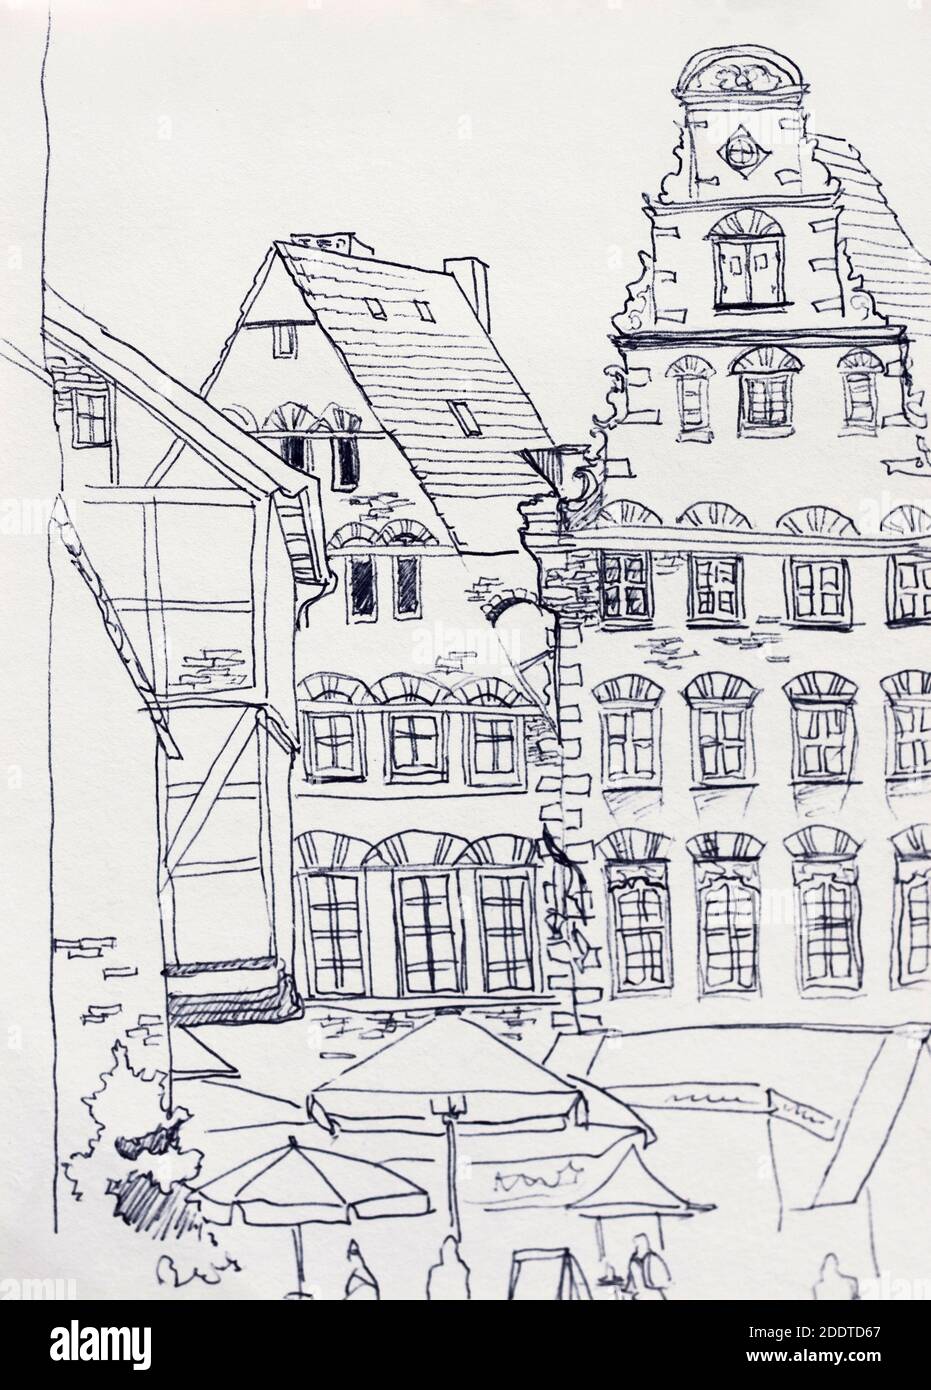 Place du marché médiéval de Brême avec de vieux bâtiments baroques illustration de la mise en plan de la linéarisation d'origine du ffest Banque D'Images